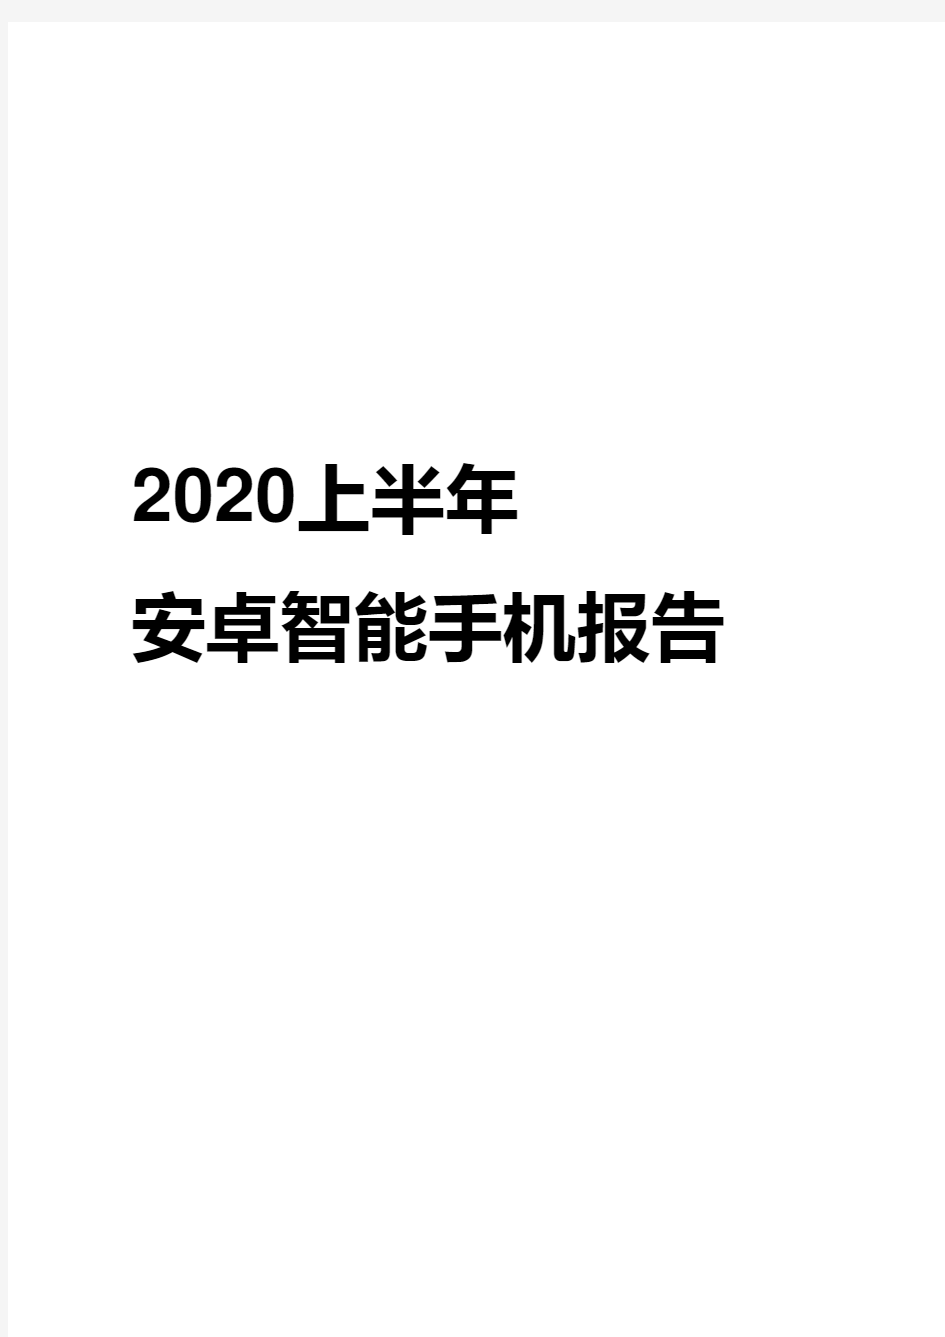 2020-2021年上半年安卓智能手机报告